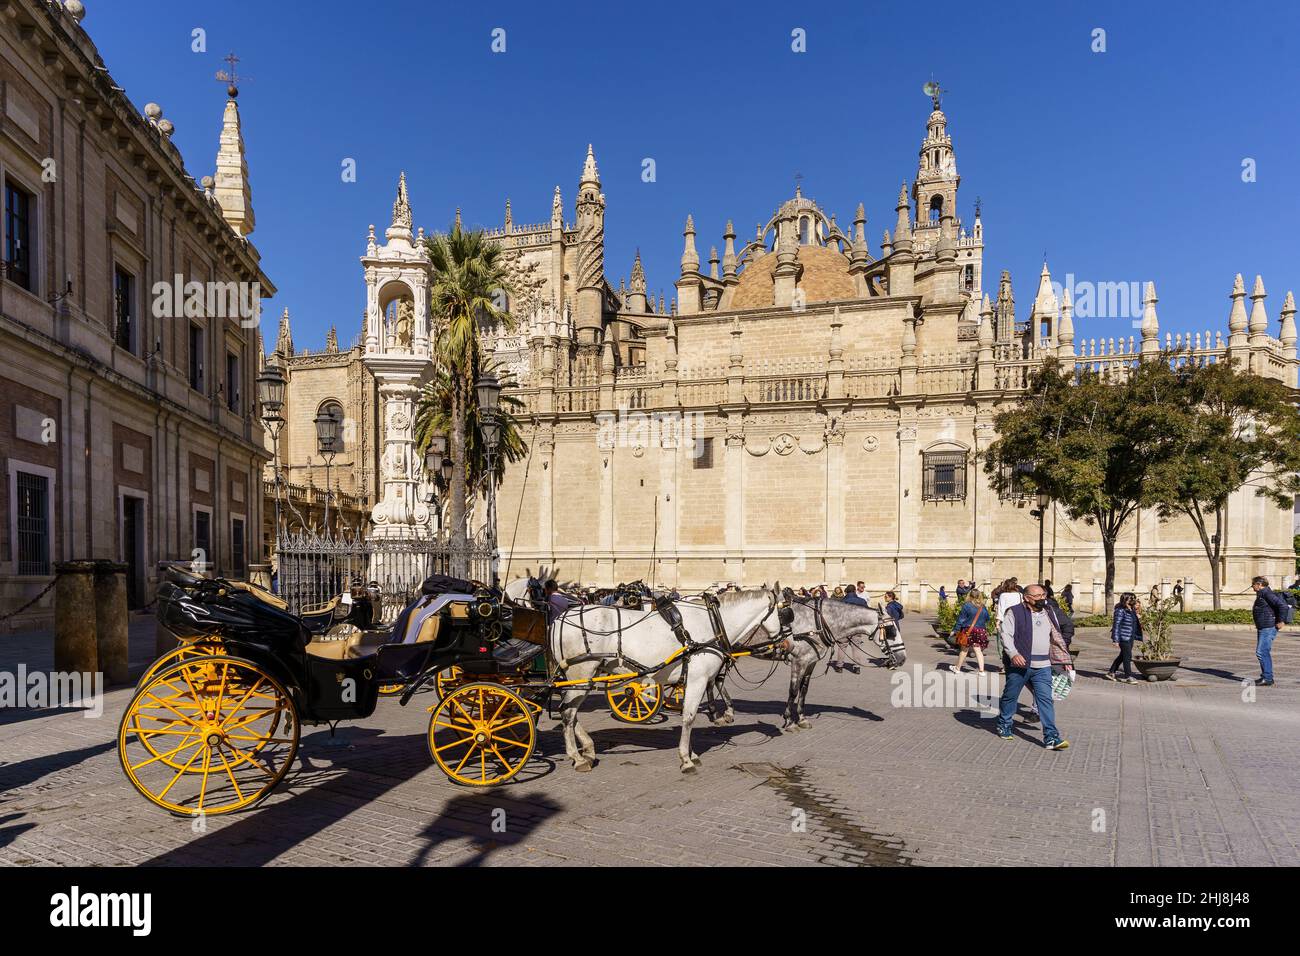 Sevilla, España - 08 2021 de noviembre: Un carruaje de caballos está esperando a los turistas en la Catedral de Sevilla en el centro histórico en un día soleado Foto de stock